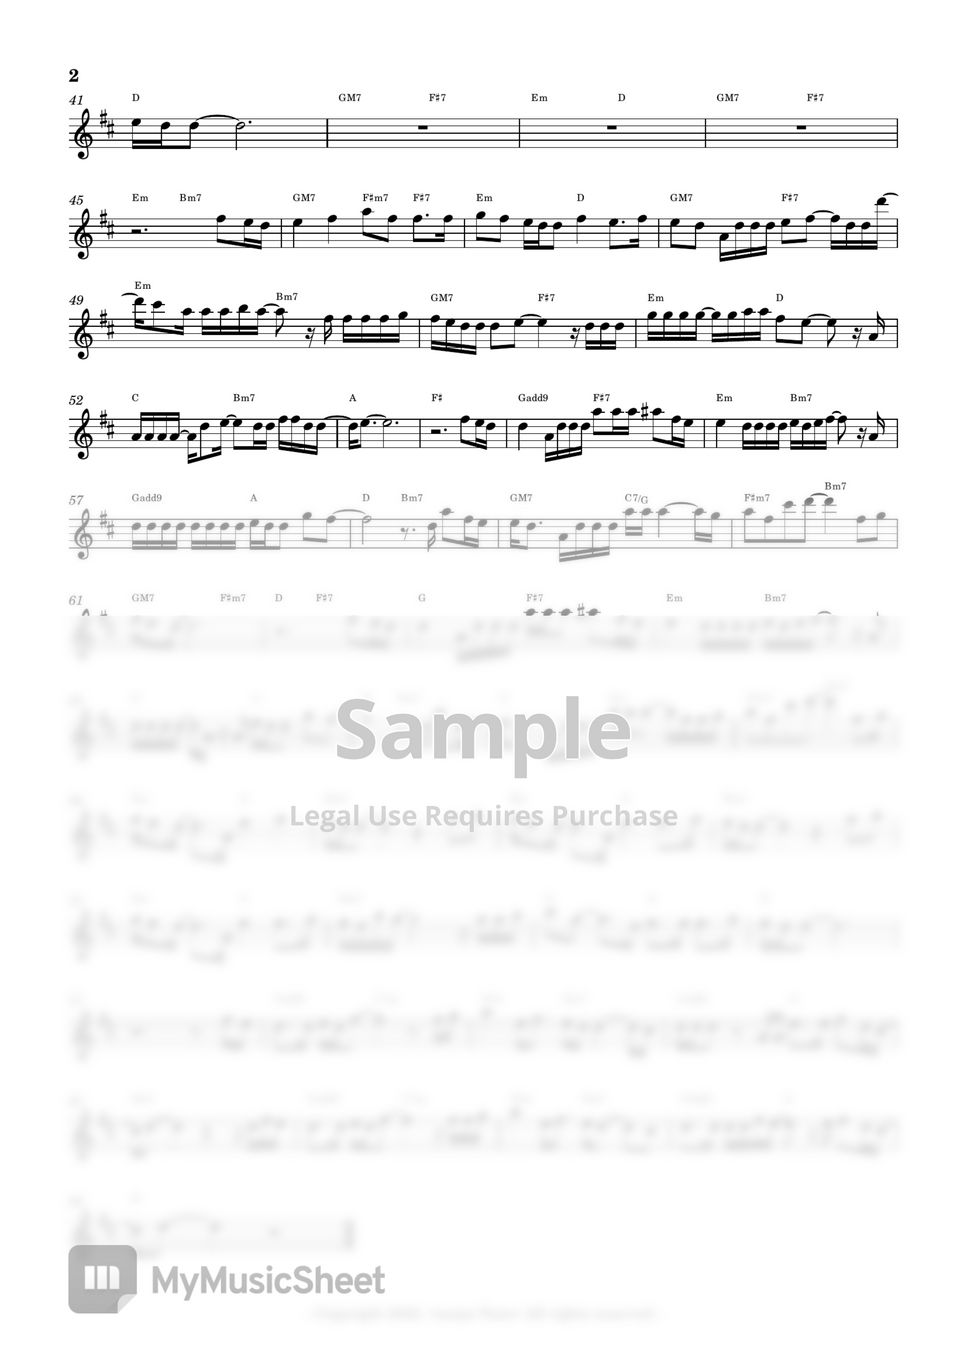 요루시카 ヨルシカ - 좌우맹  左右盲 (Flute Sheet Music) by sonye flute